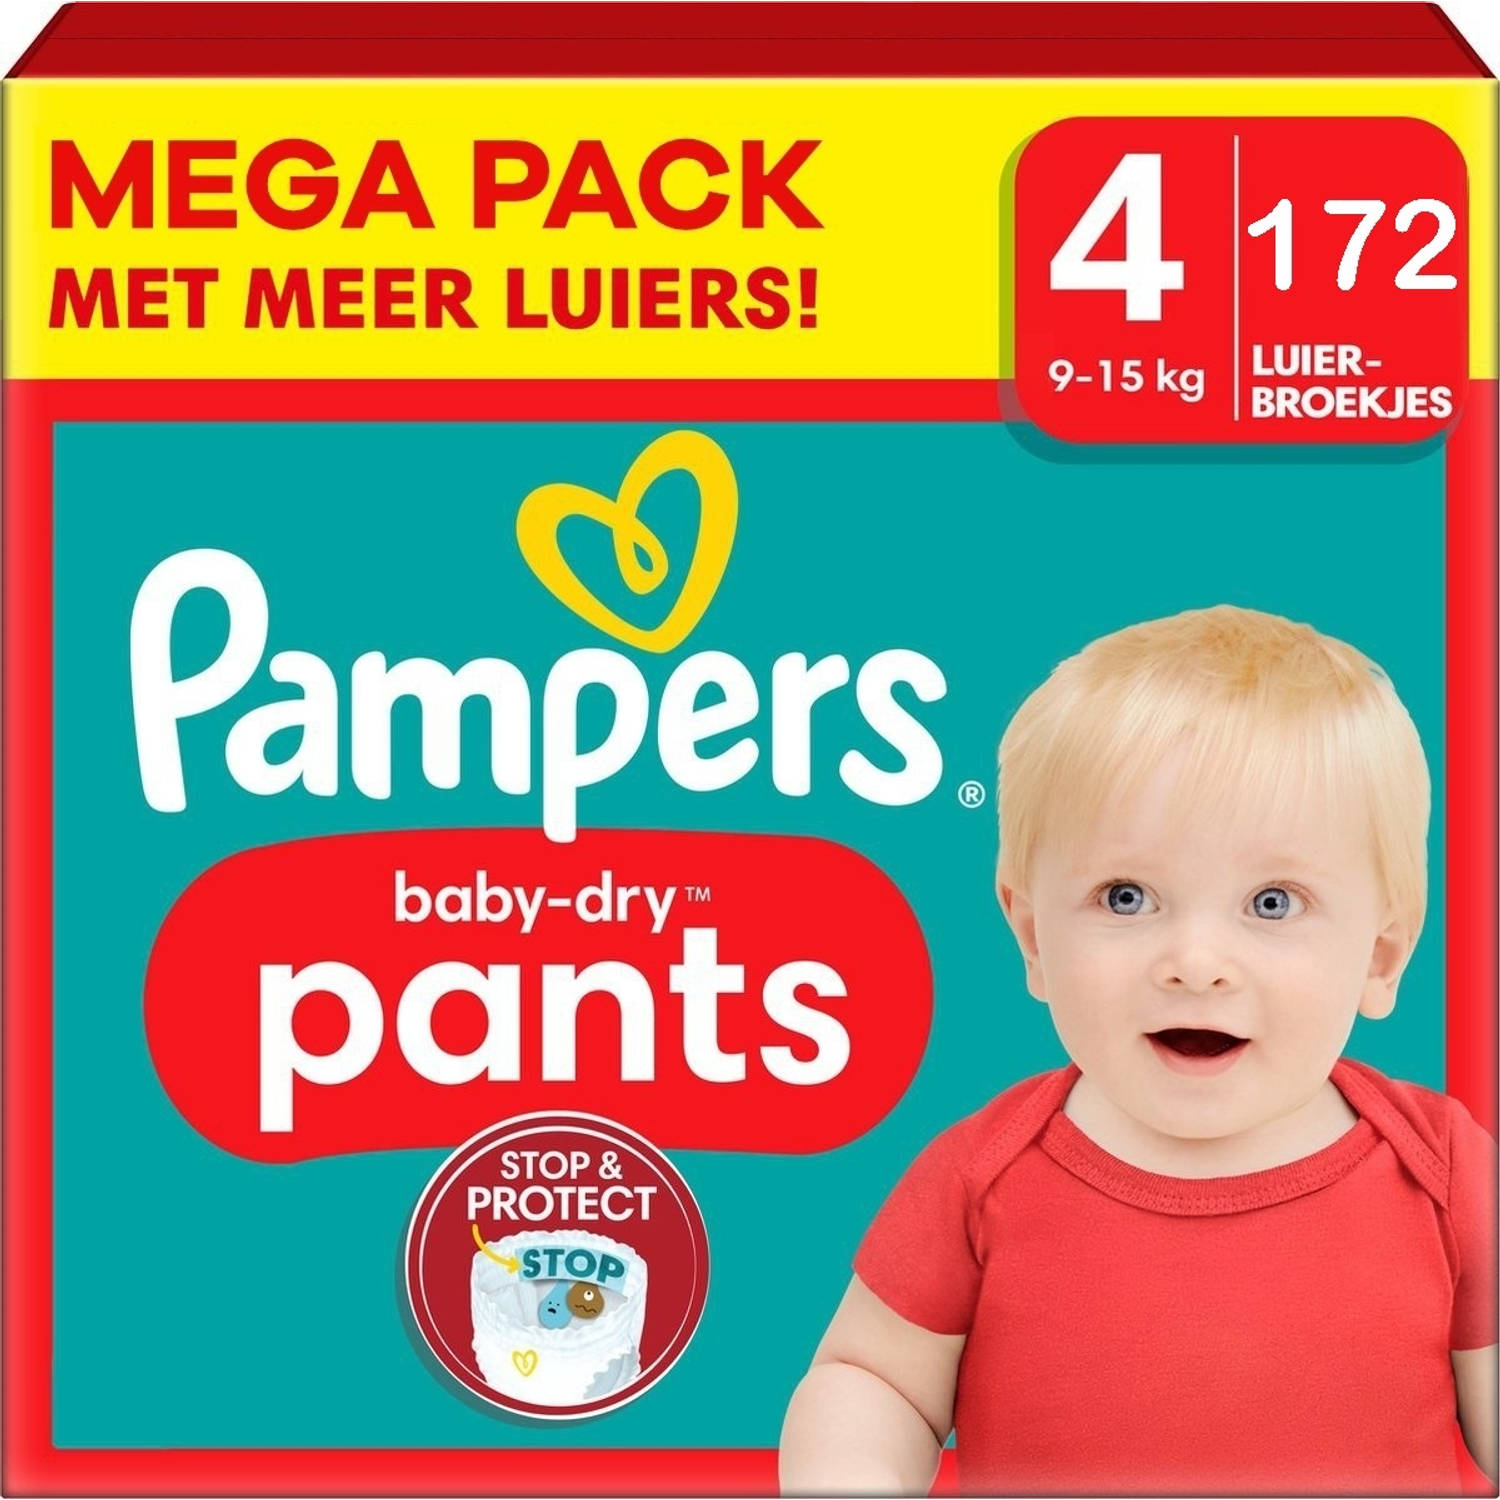 Pampers Baby Dry Pants Maat 4 Maandbox 172 stuks 9-15KG